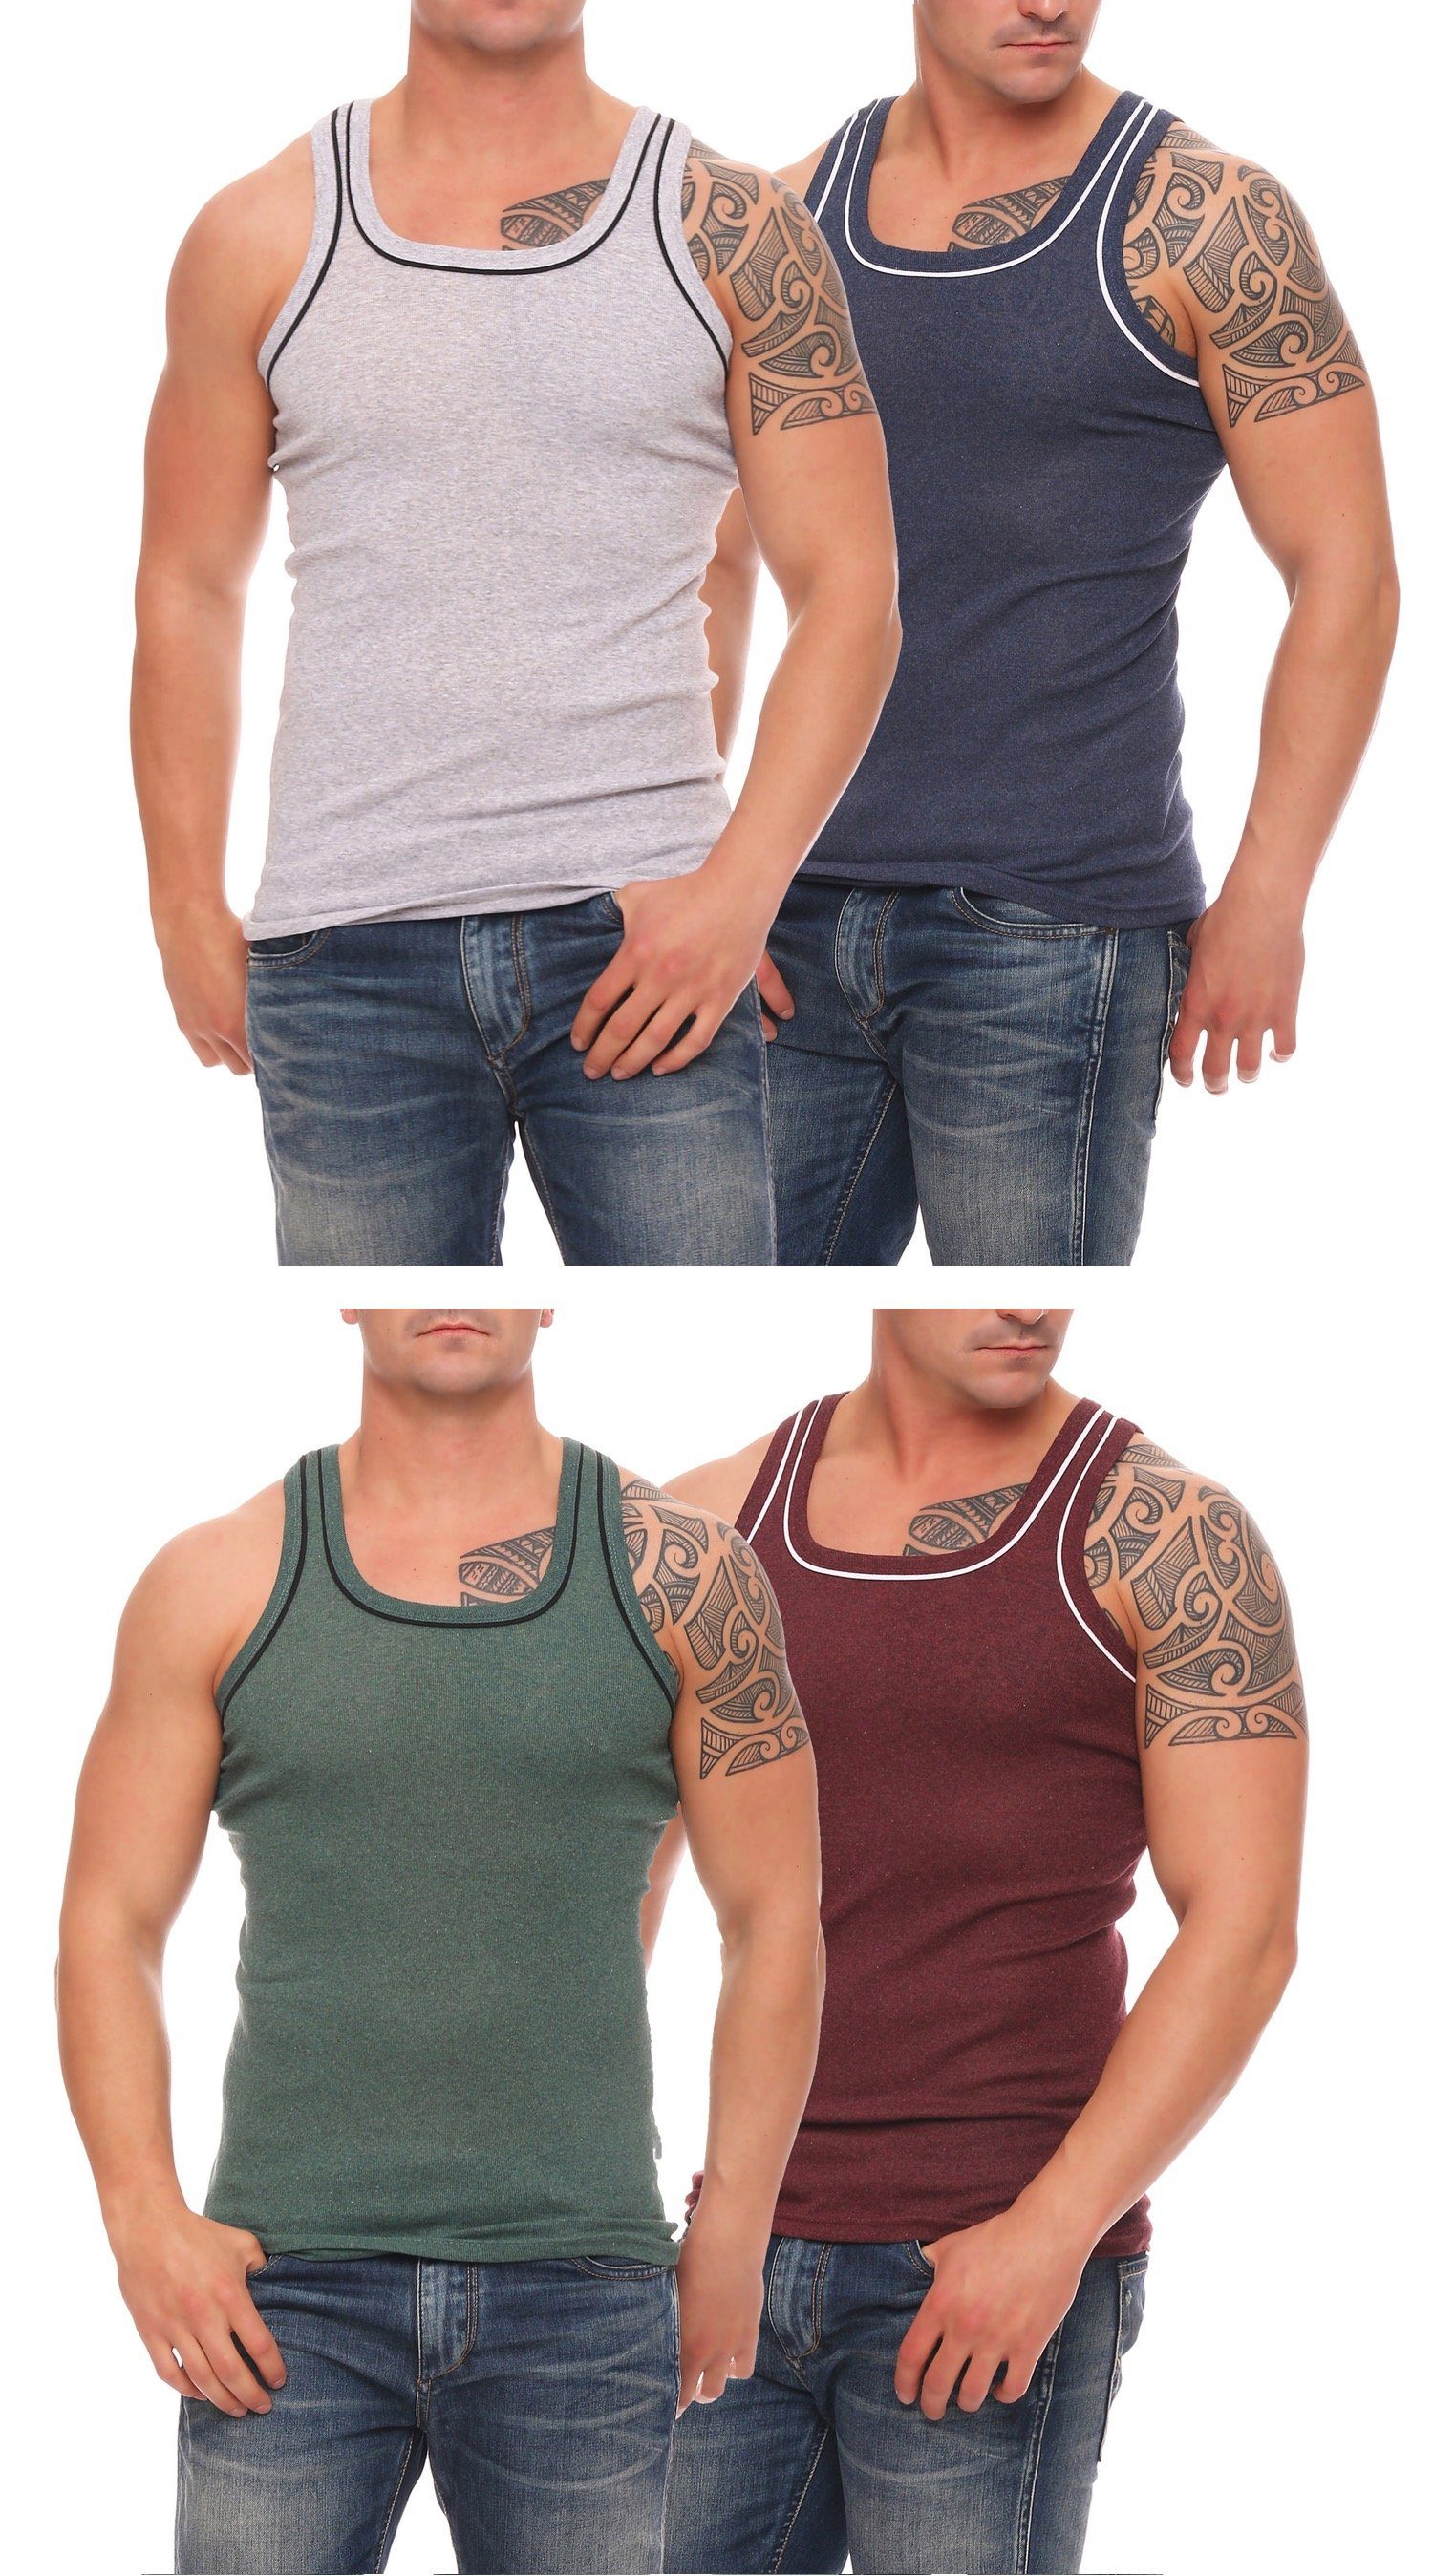 Cocain underwear Unterhemd Herren Unterhemden Vollachsel Achselhemden (4-St) produziert in Europa 4x grau-dunkelblau-grün-bordeaux